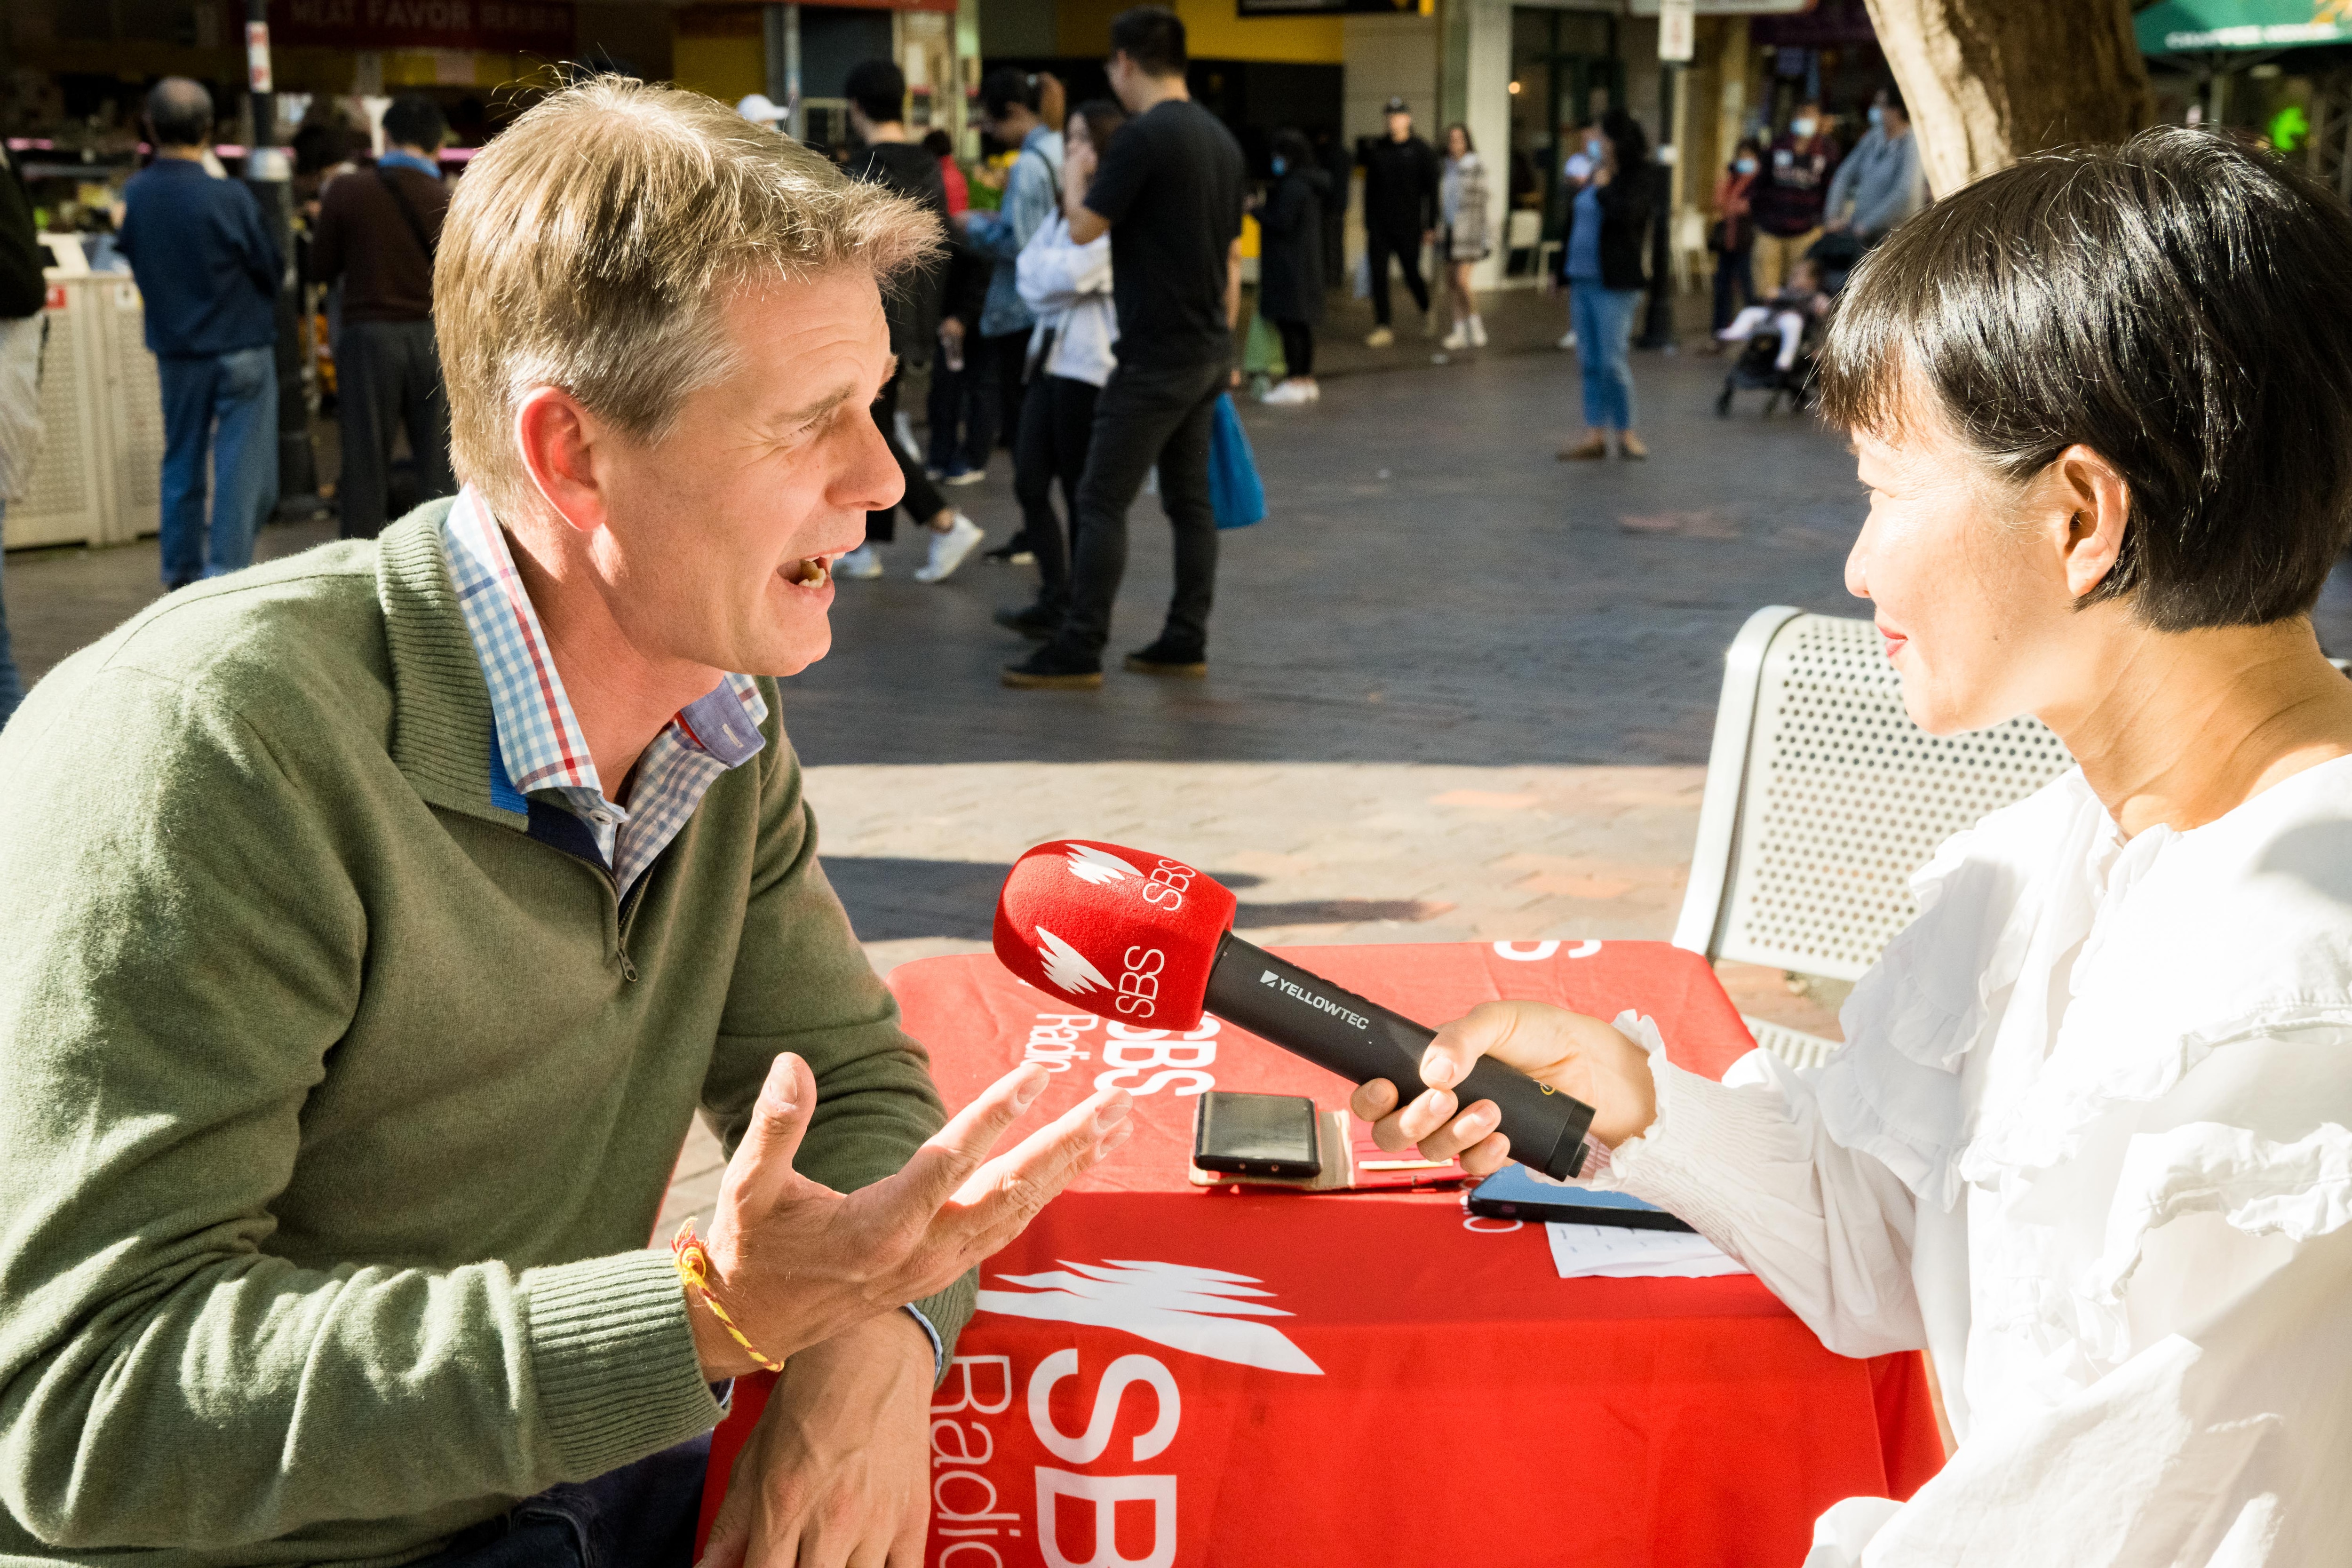 巴拉玛打（Parramatta）选区工党候选人安德鲁·查尔顿（Andrew Charlton）接受SBS普通话节目采访。